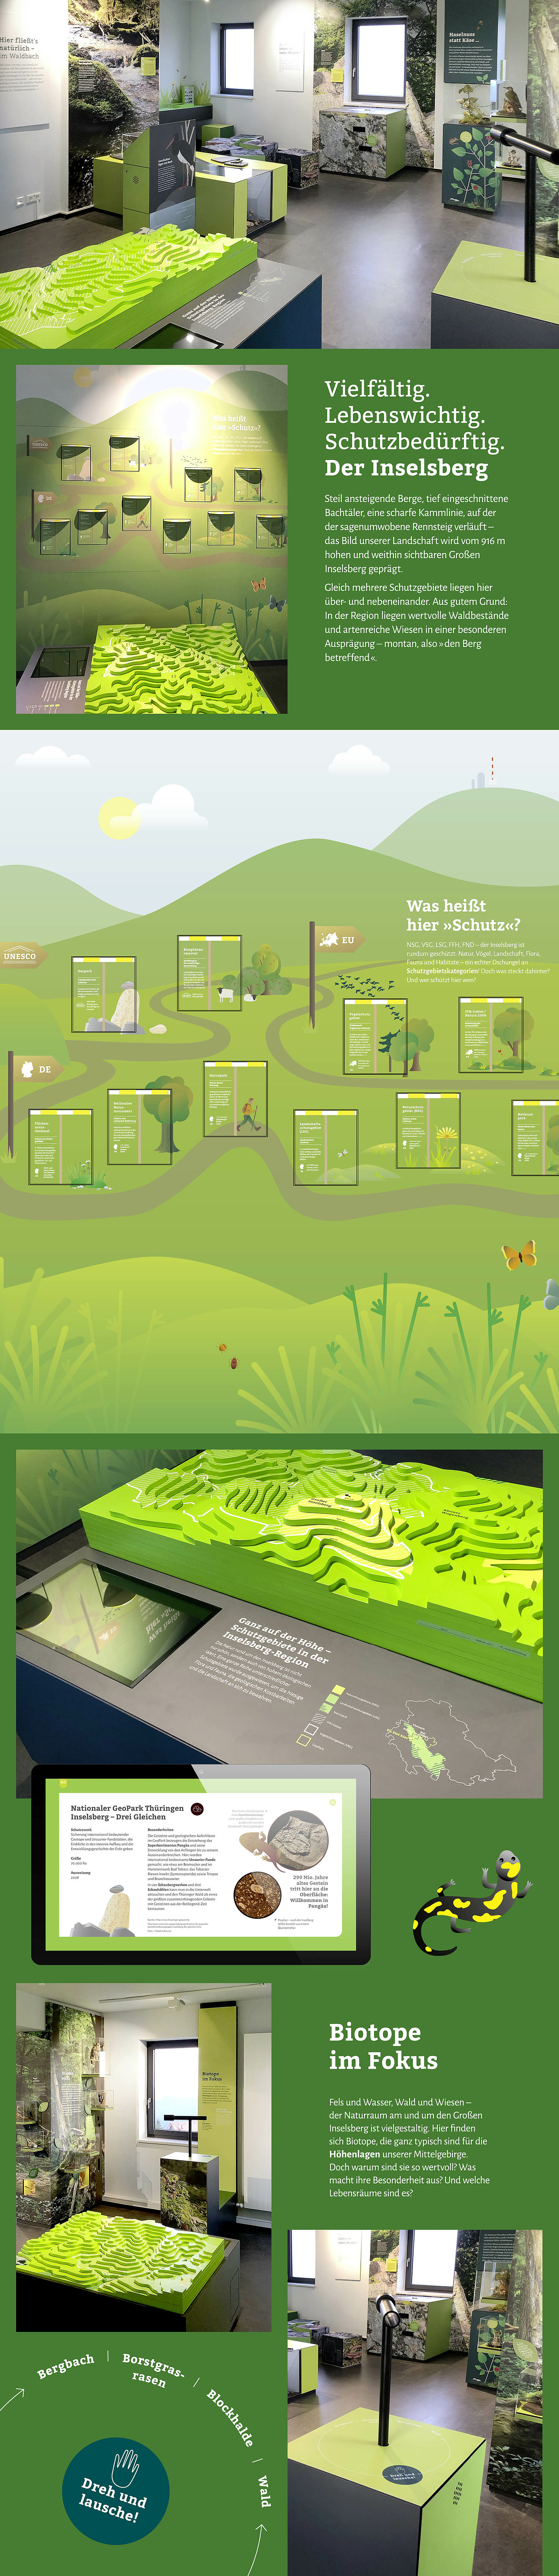 Einblicke in die Ausstellung der 2. Etage mit der Wandtafel zu den Schutzgebietskategorien, einem 3D-Landschaftsmodell des Inselsbergs und einem Modul zum FFH-Gebiet 60.  (© Papenfuss | Atelier)